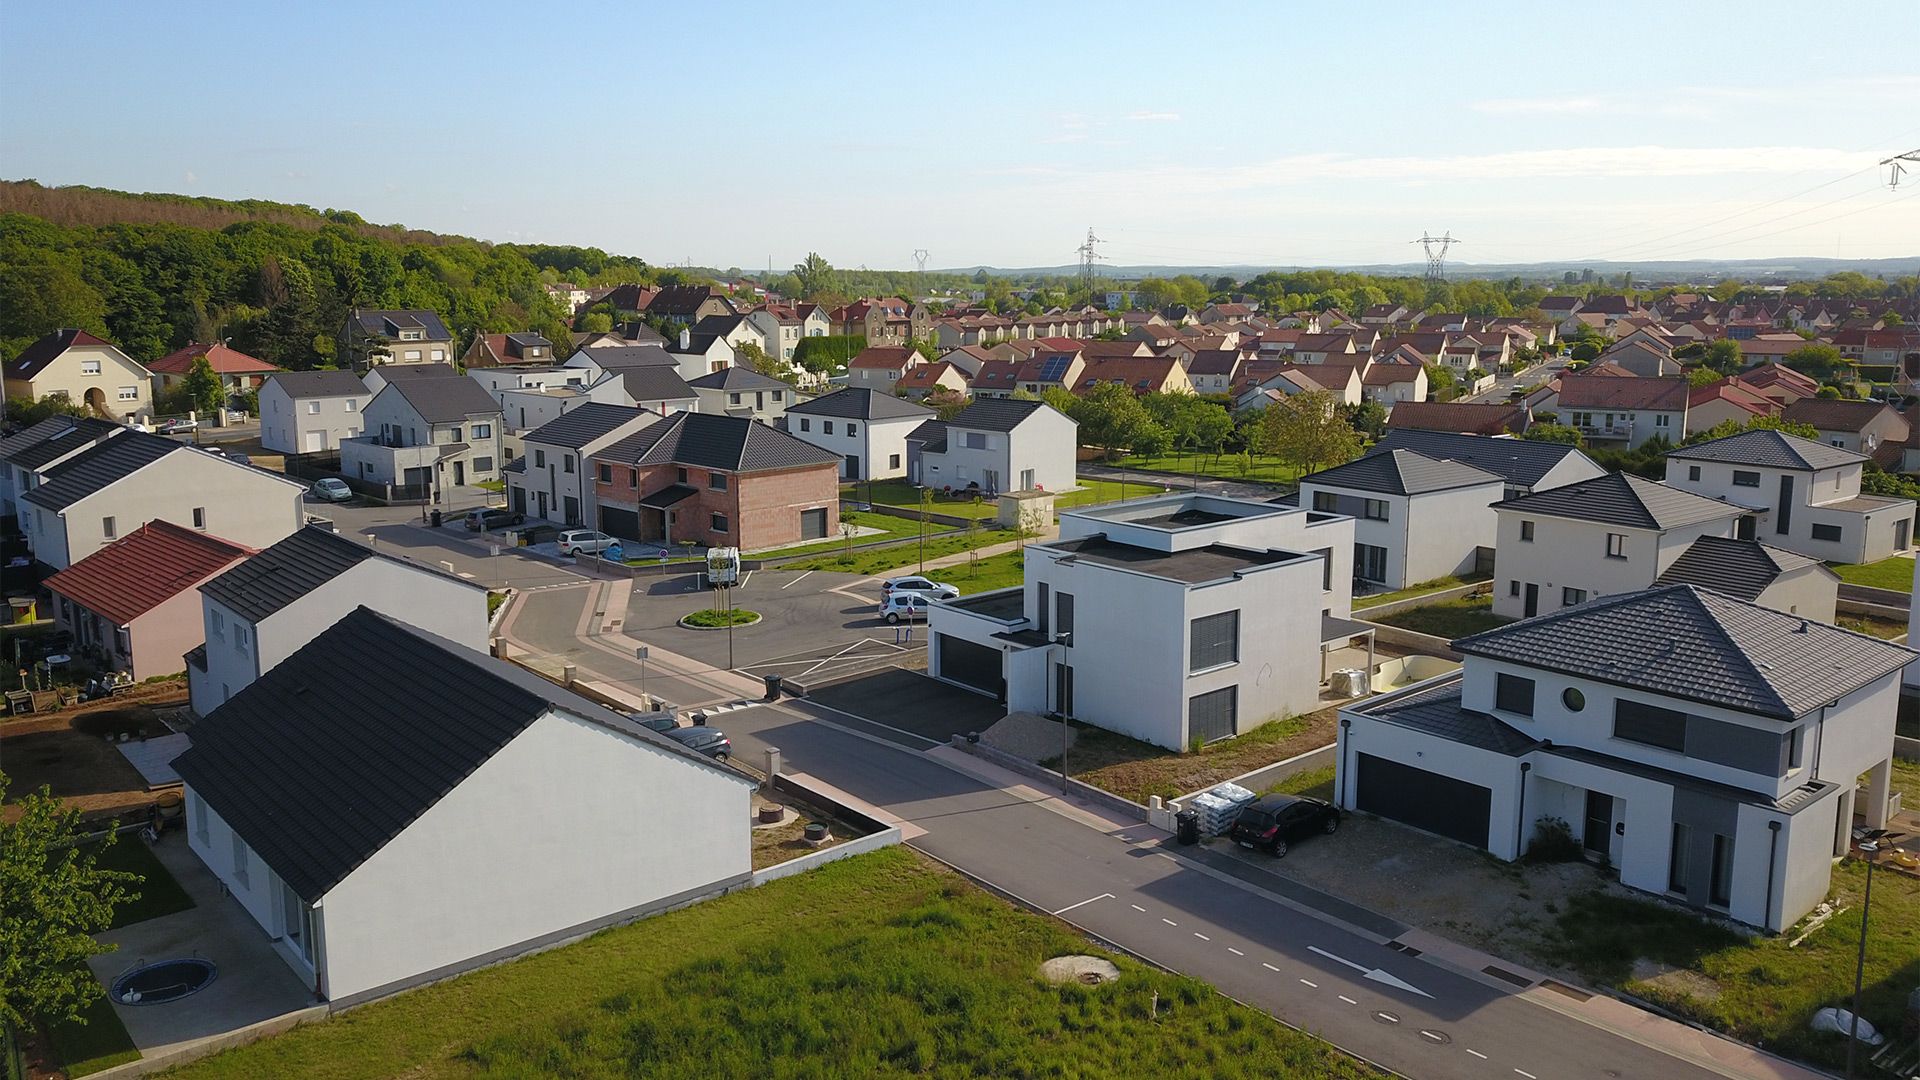 Concept Immobilier - Le Clos Julienne - Lotissement à Maizières-lès-Metz - Vue extérieure